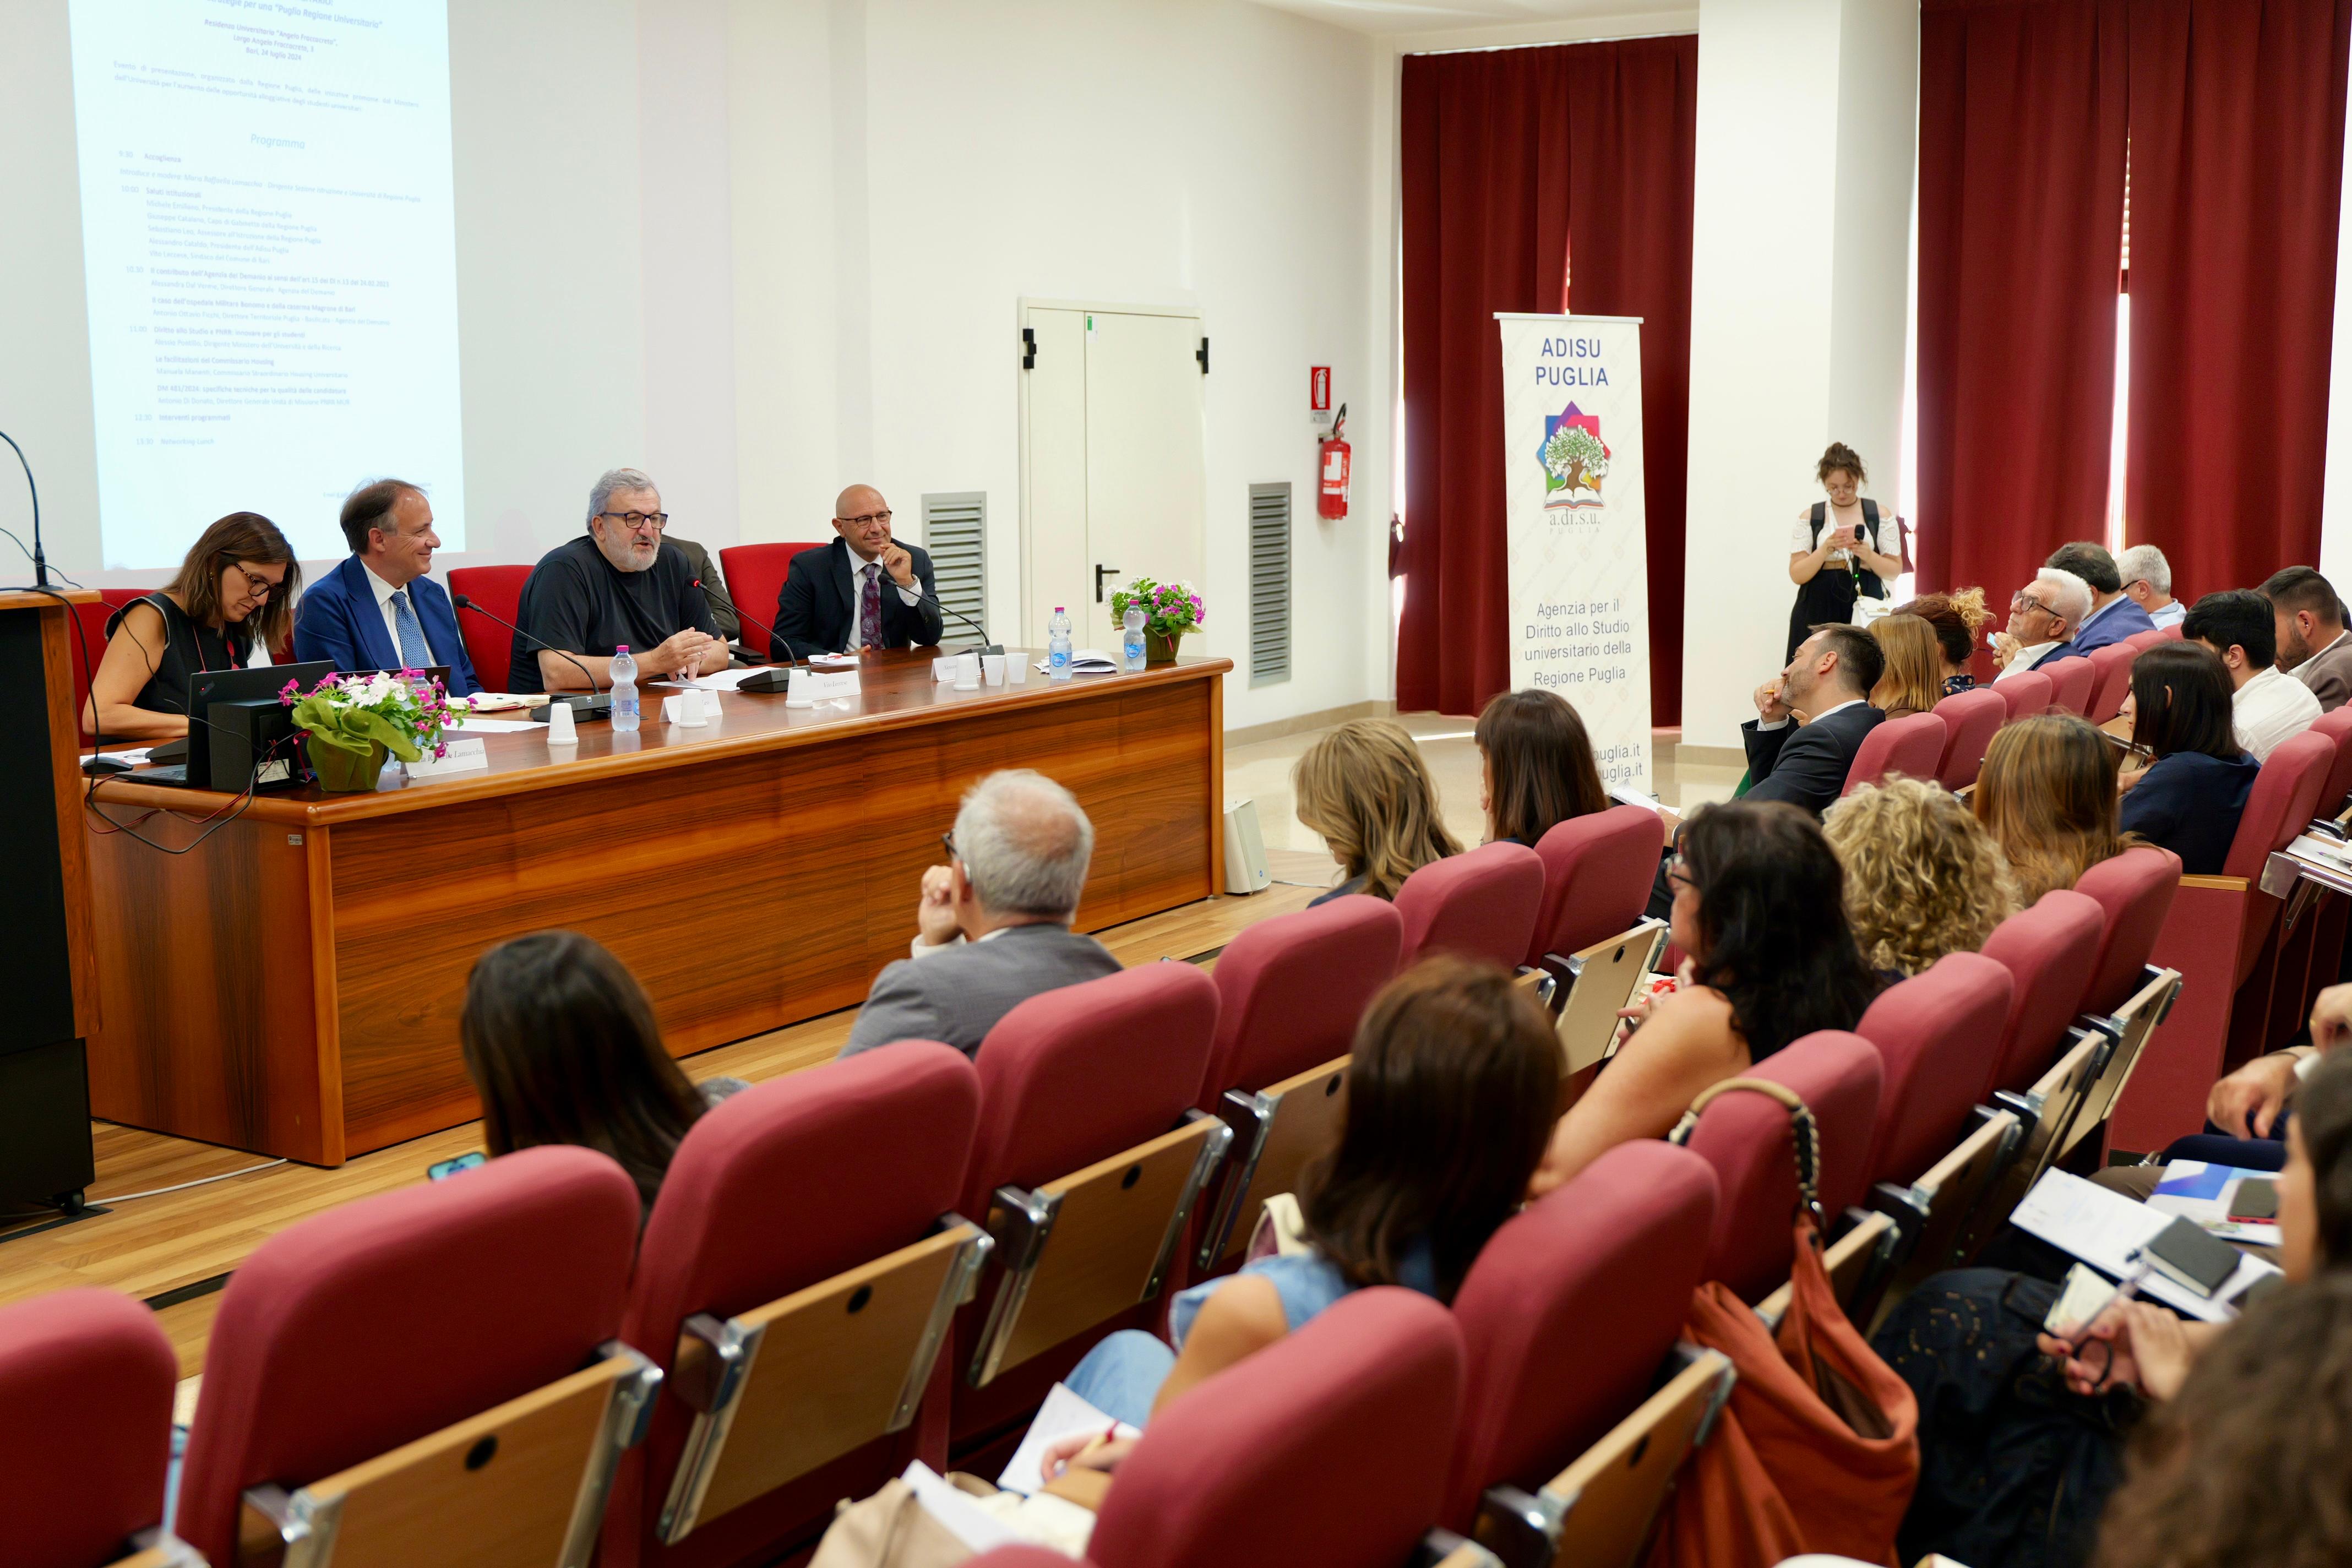 Galleria PNRR e nuovi alloggi universitari, nuove sfide per la Puglia tra sostenibilità, innovazione e qualità della vita - Diapositiva 1 di 8